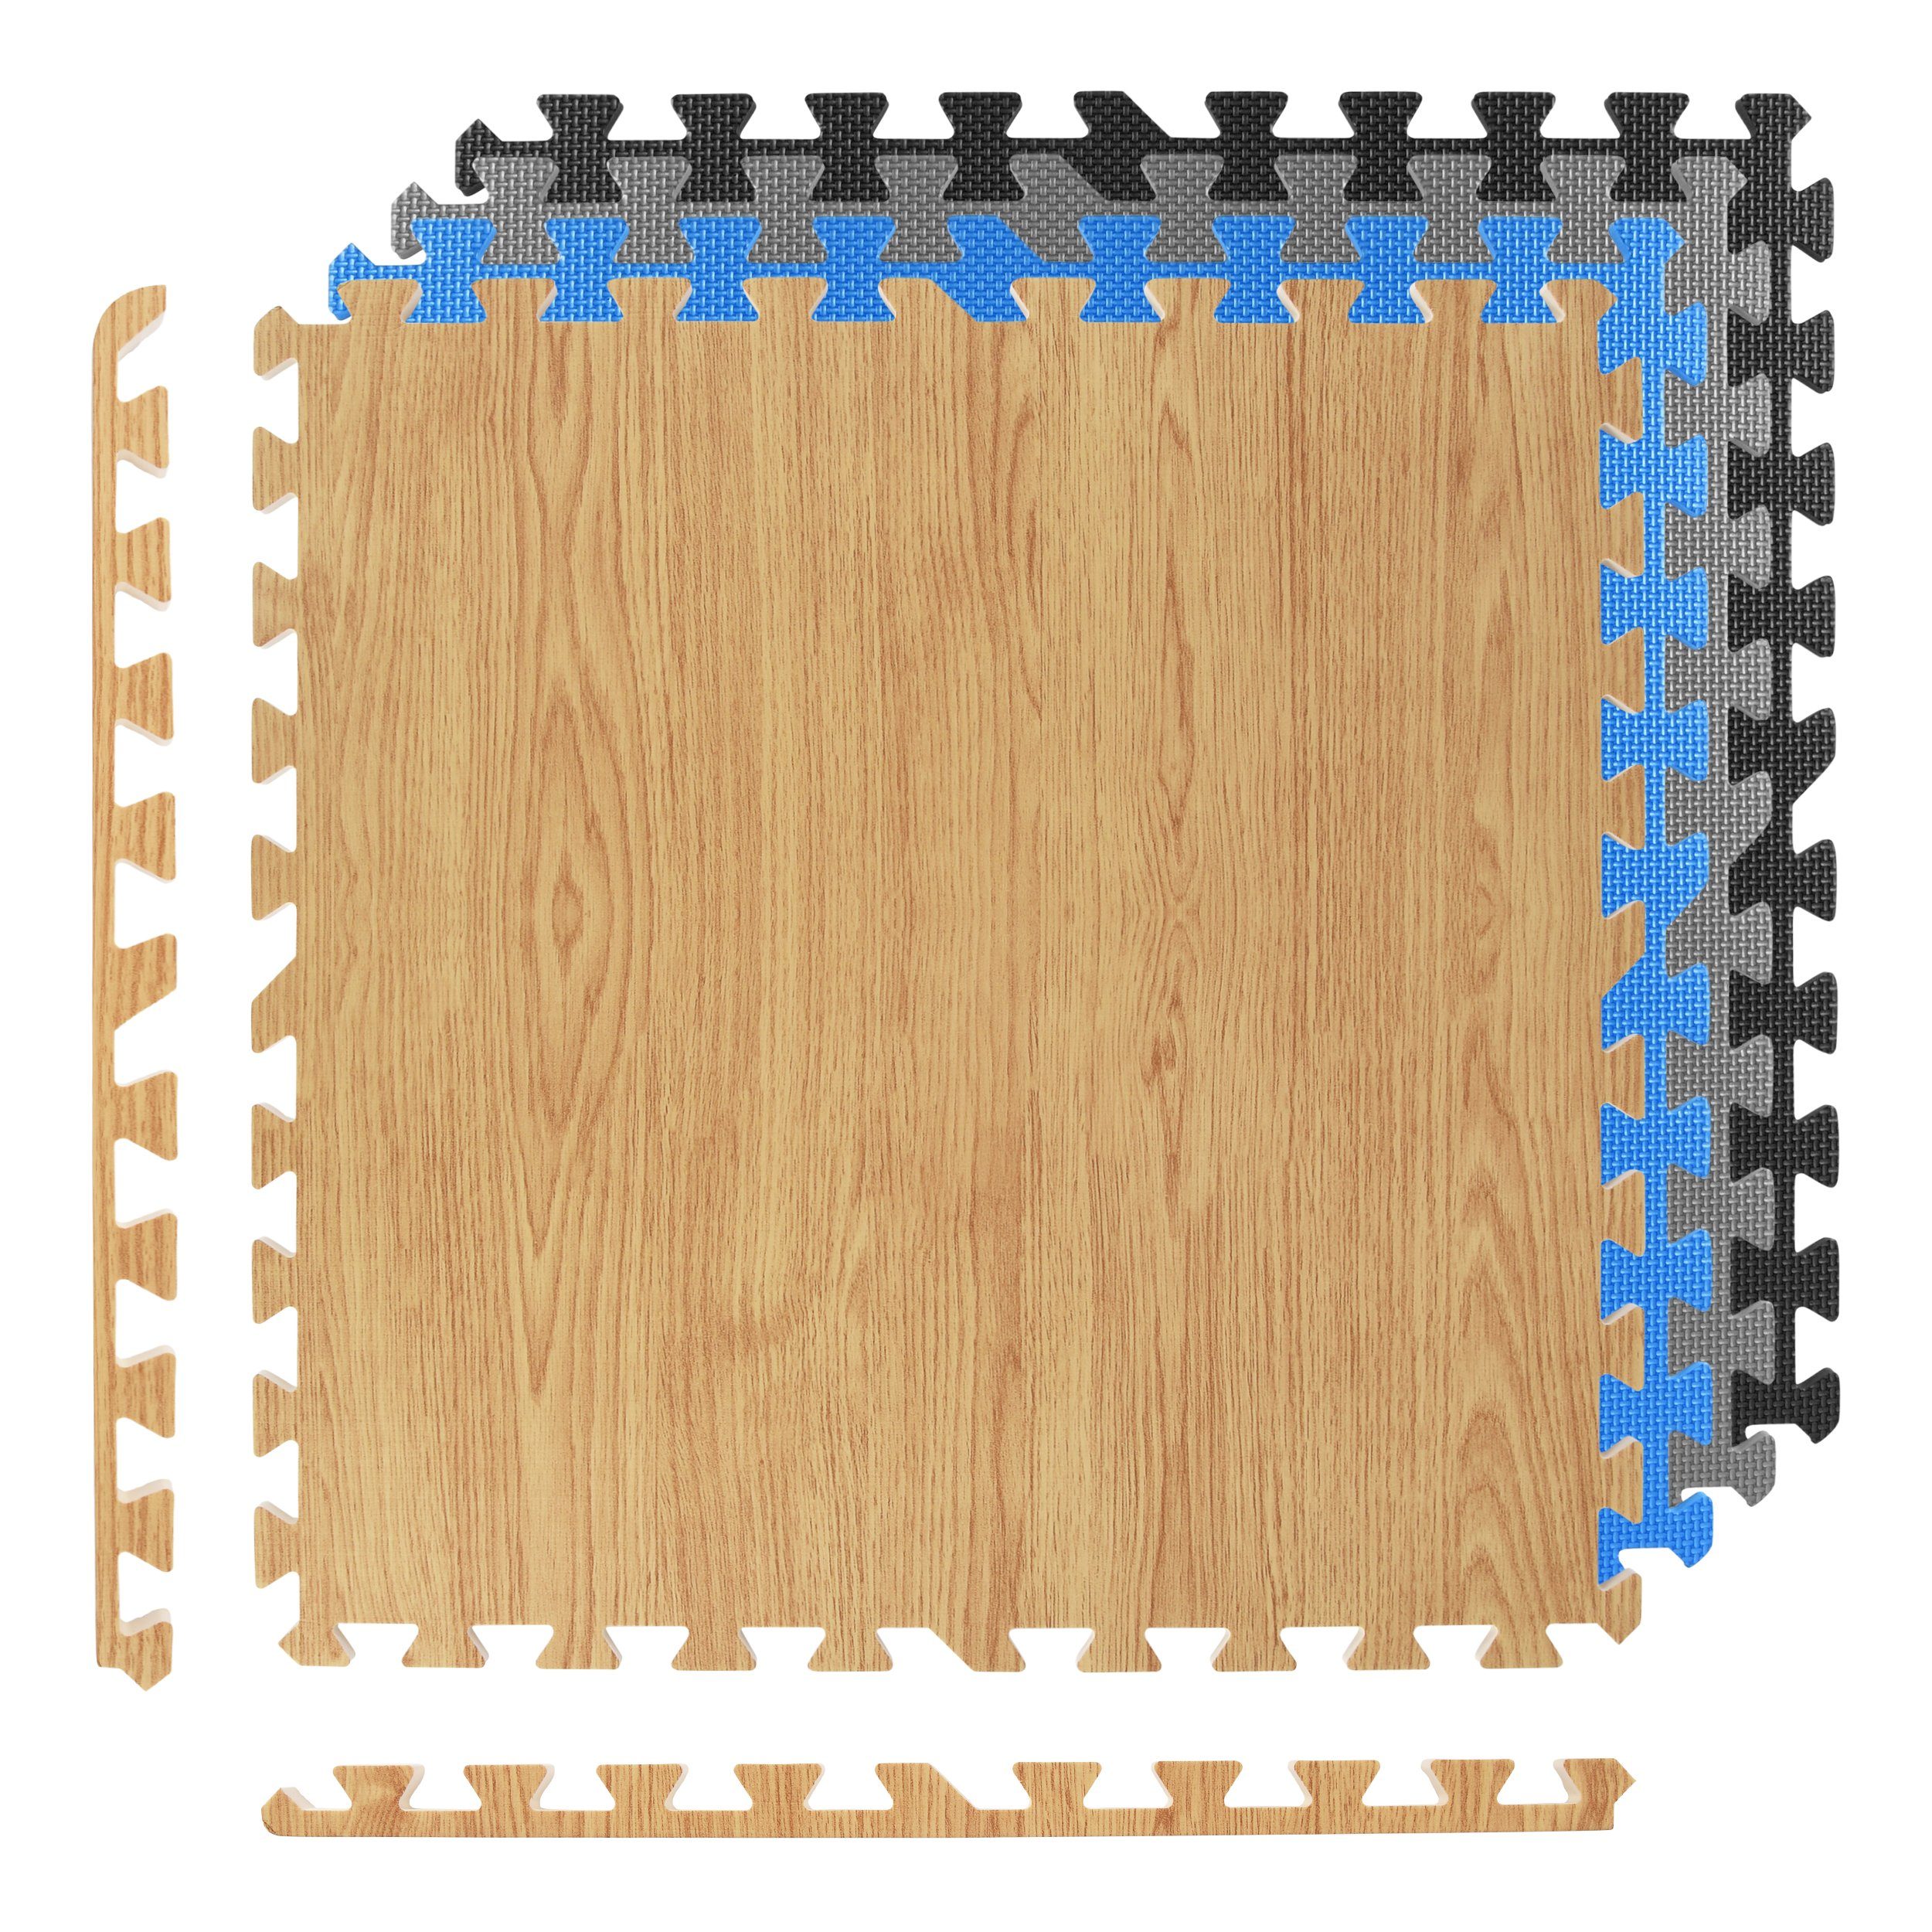 MSports® Bodenmatte »Bodenschutzmatten Set - 8 Schutzmatten in  verschiedenen Farben 3,175m² Bodenschutz 60x60 cm Stärke: 1,2 cm  Puzzlematten Gymnastikmatte« (8 Schutzmatten) online kaufen | OTTO